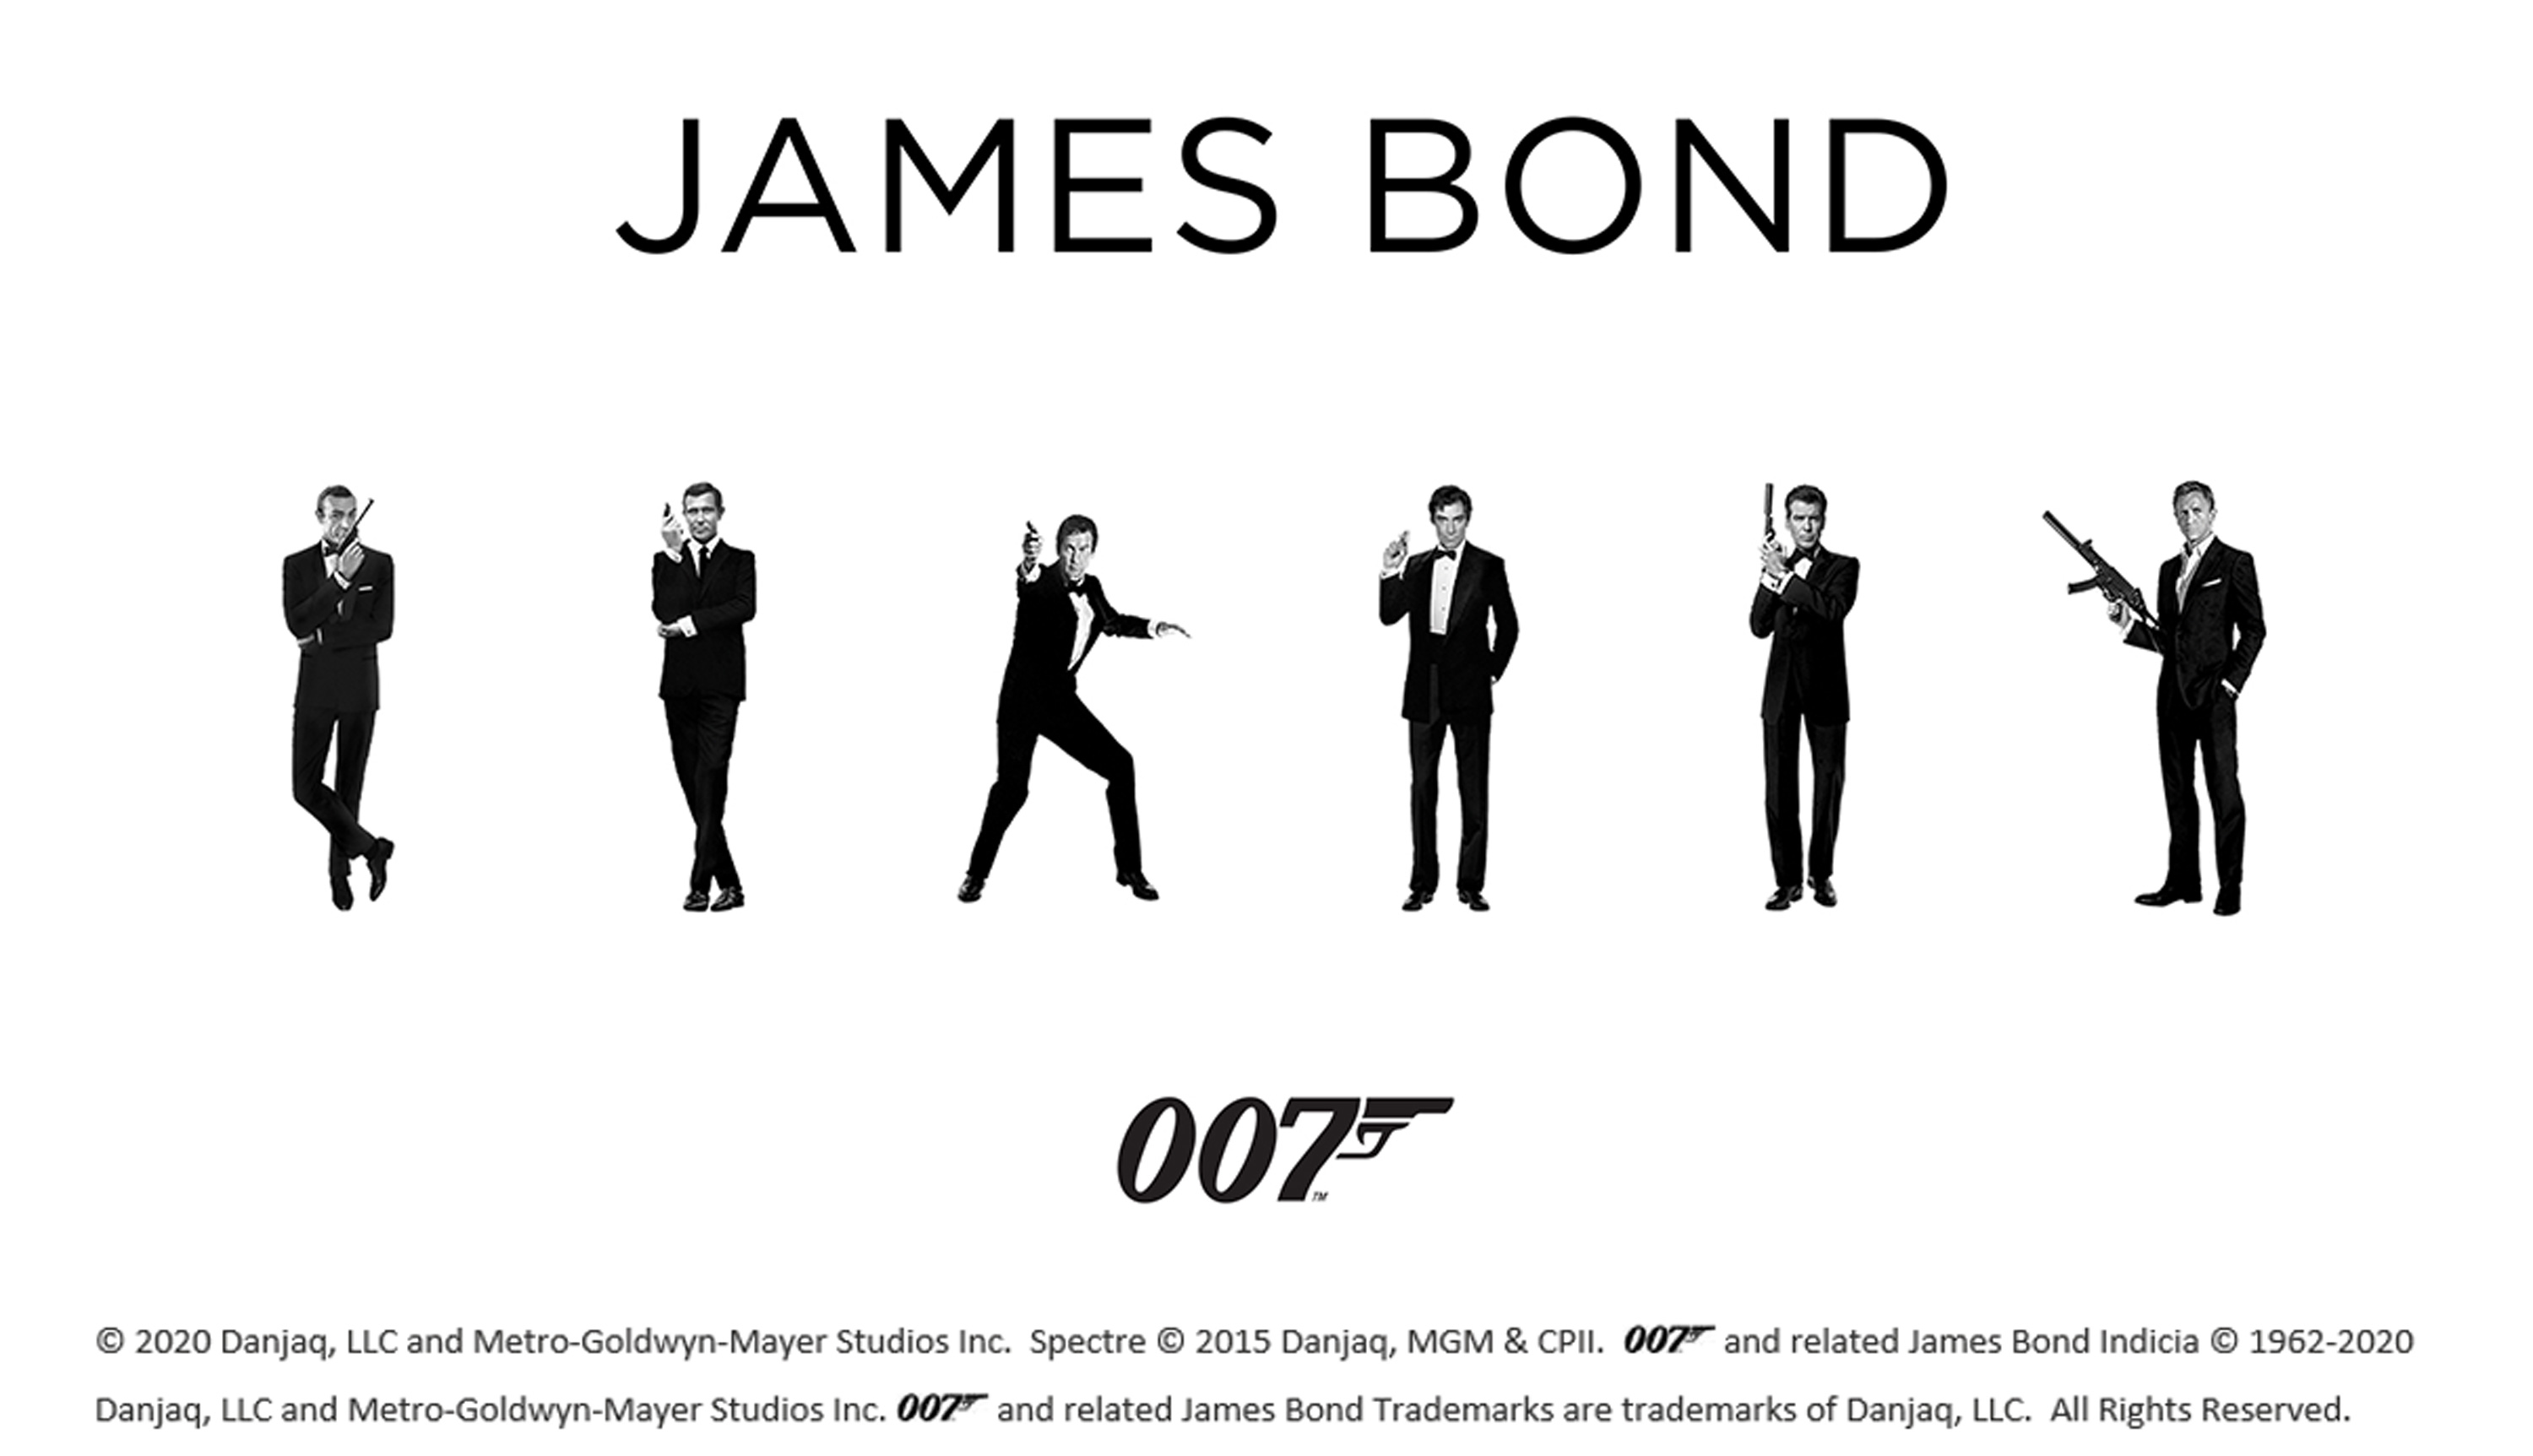 ムービープラス 007人気投票 第1位は ショーン コネリー主演 007 ロシアより愛をこめて ムービープラスのプレスリリース